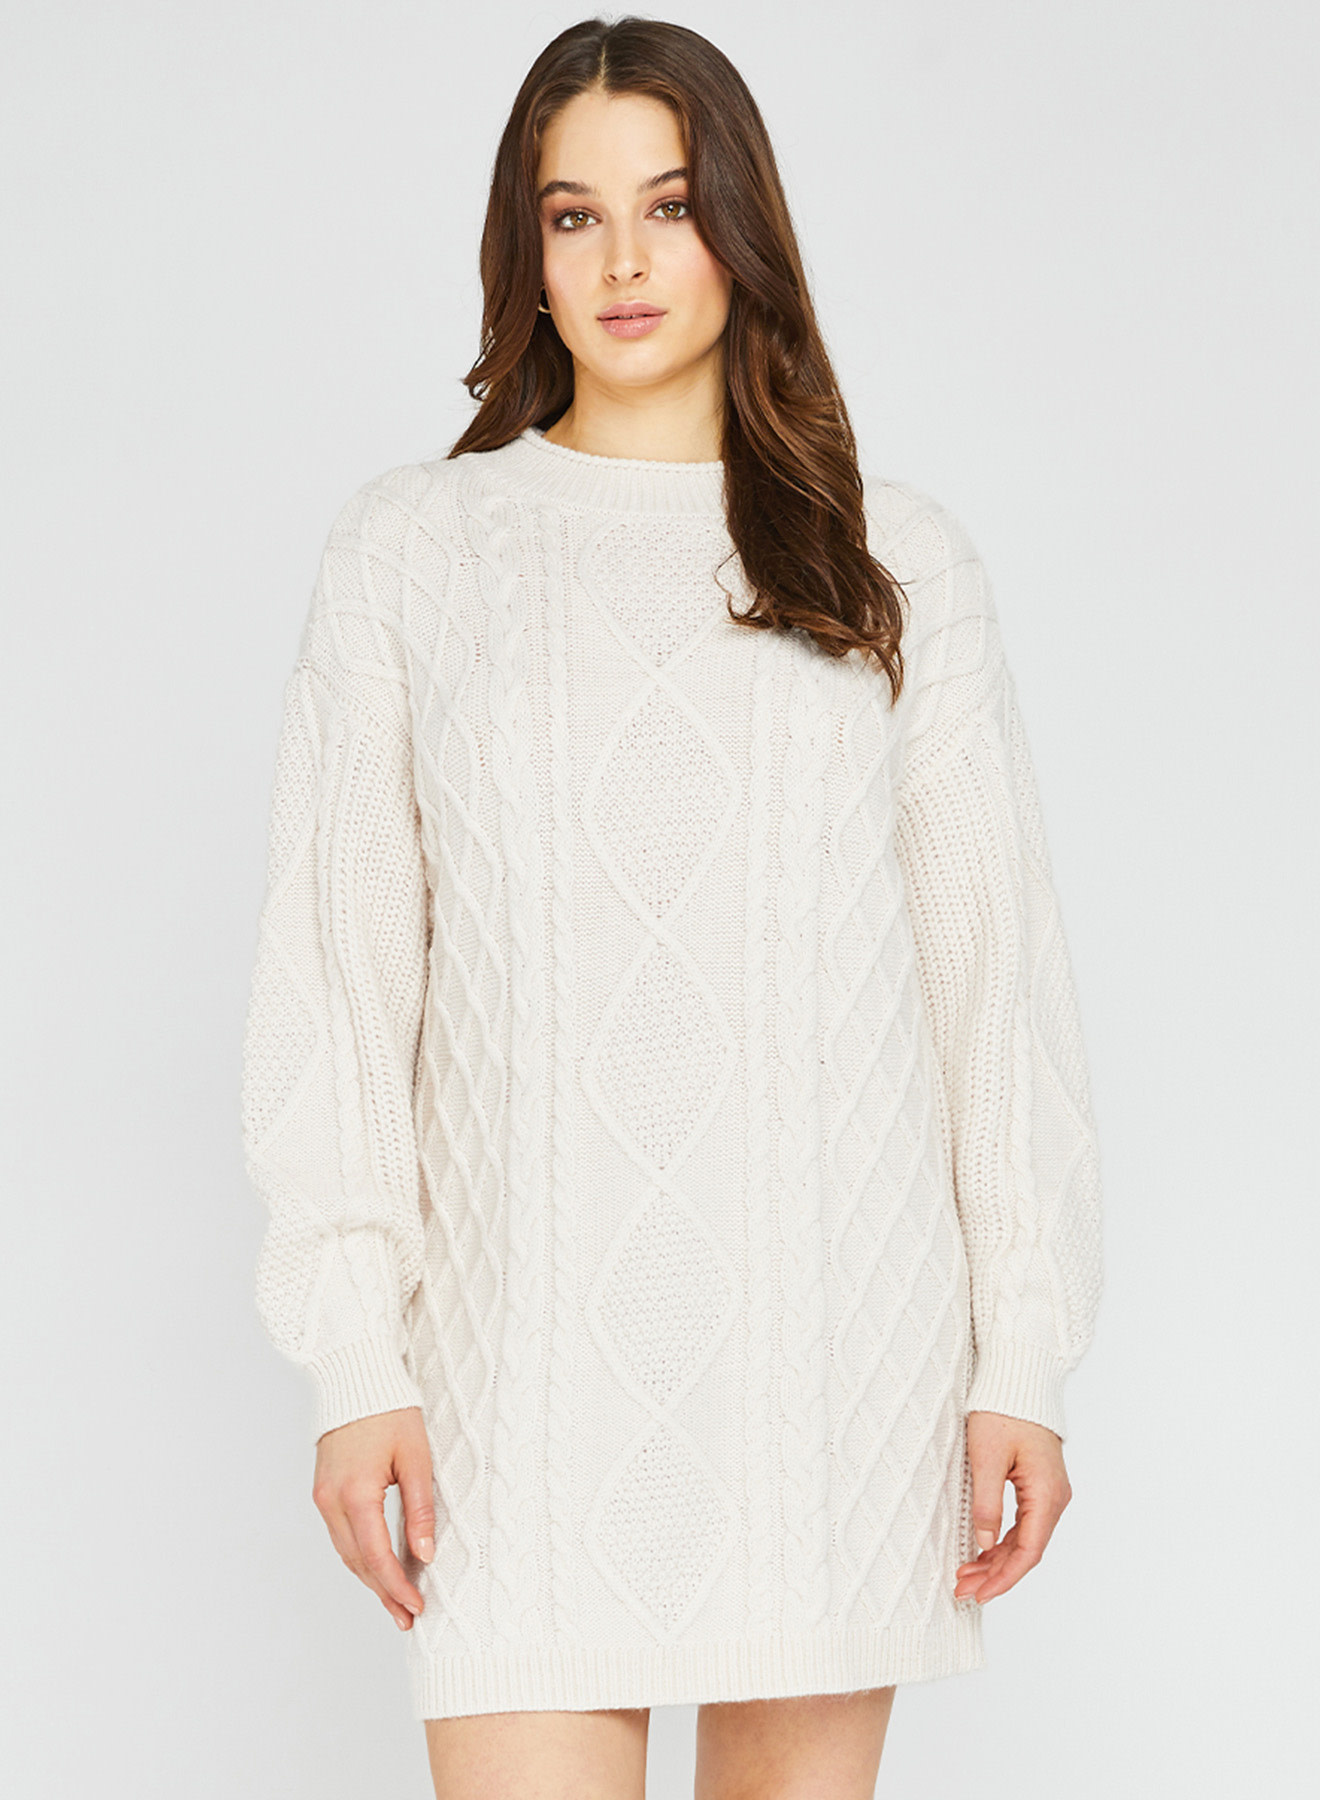 https://cdn.shoplightspeed.com/shops/640670/files/58028416/gentle-fawn-gentlefawn-ingrid-sweater-dress.jpg